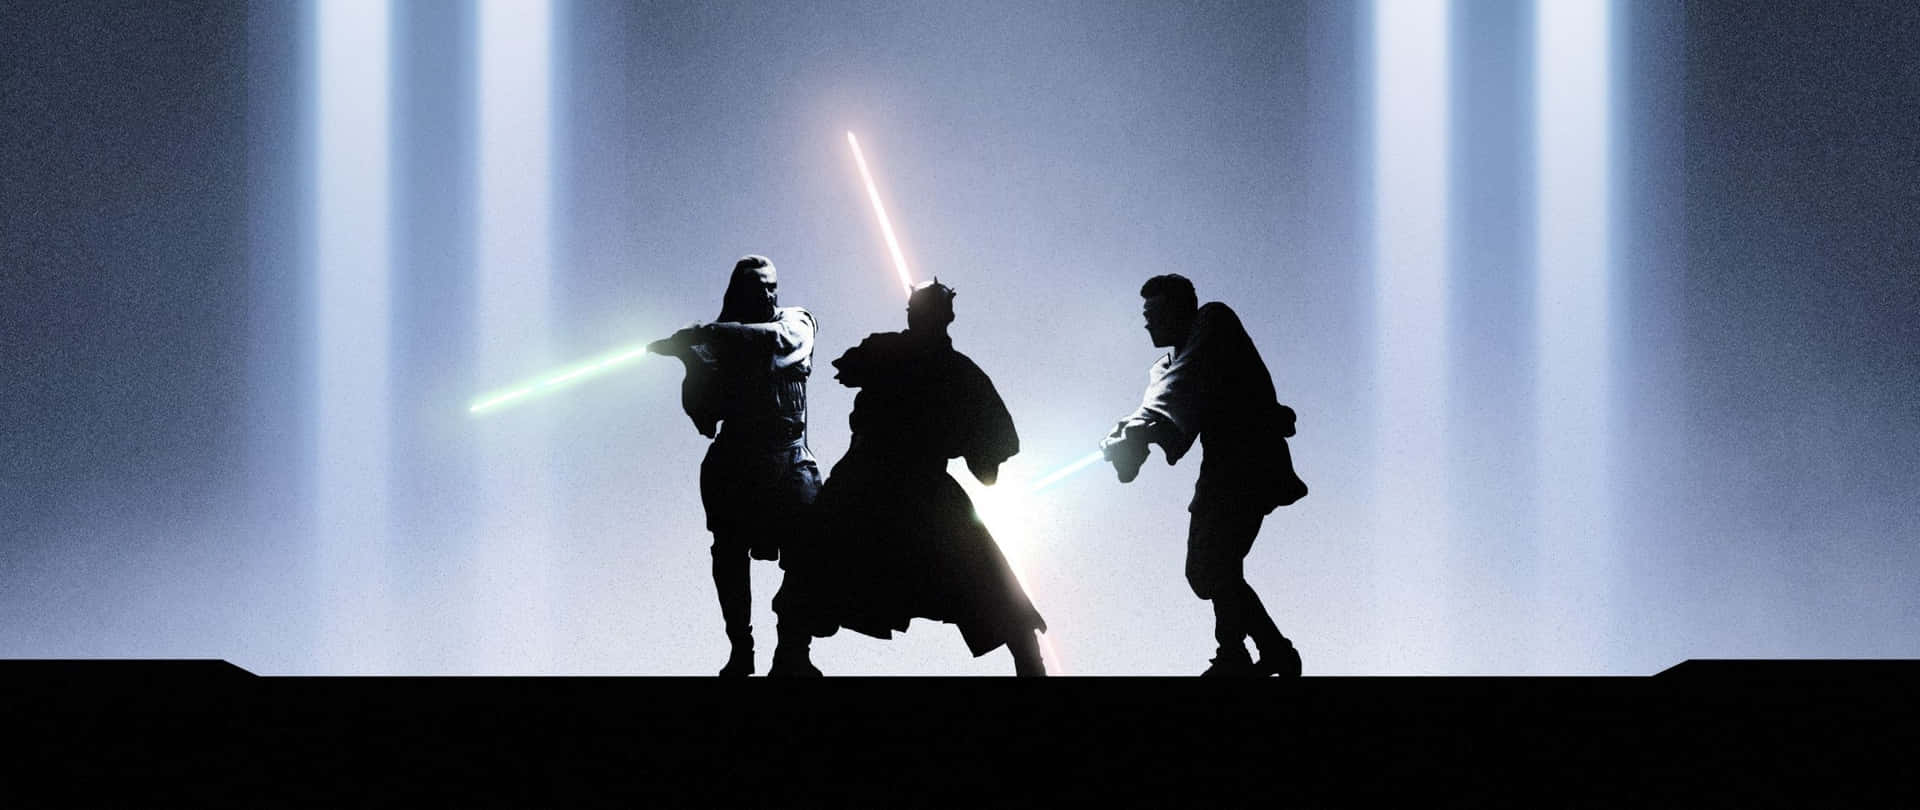 Star Wars 2560 X 1080 Lightsaber Battle Wallpaper